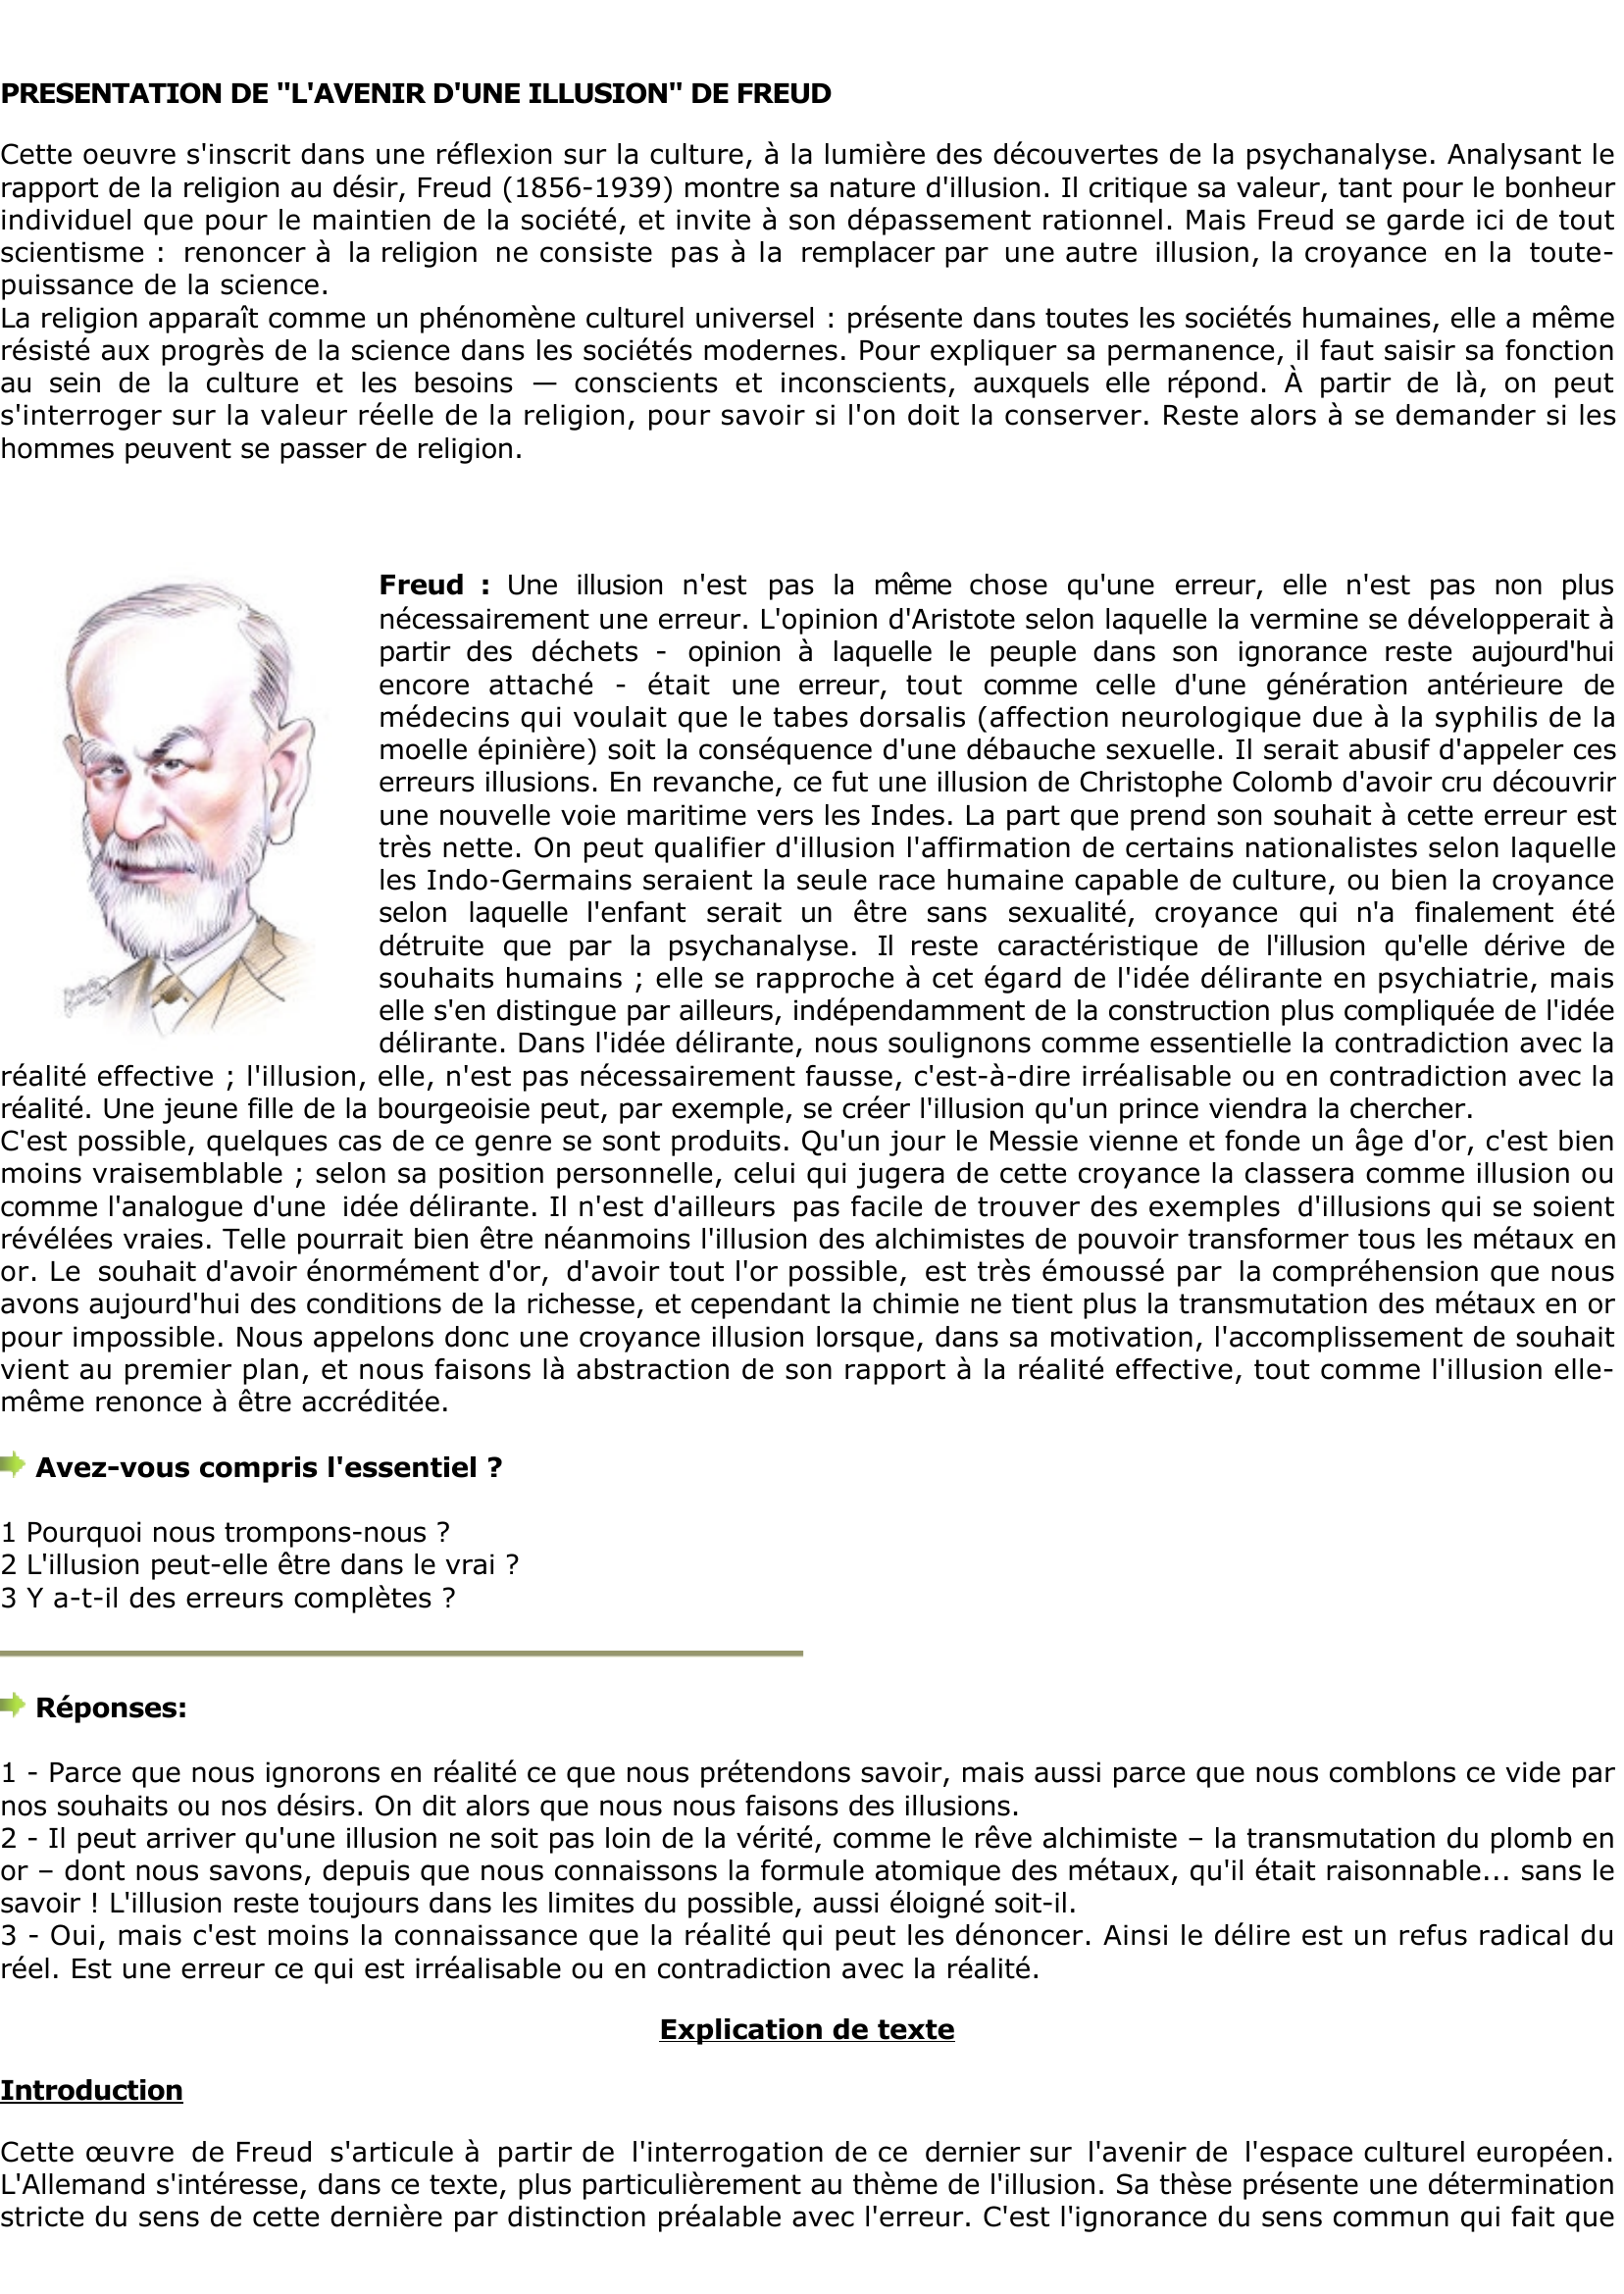 Prévisualisation du document Freud: L'erreur n'est-elle due 

qu'à l'ignorance ?